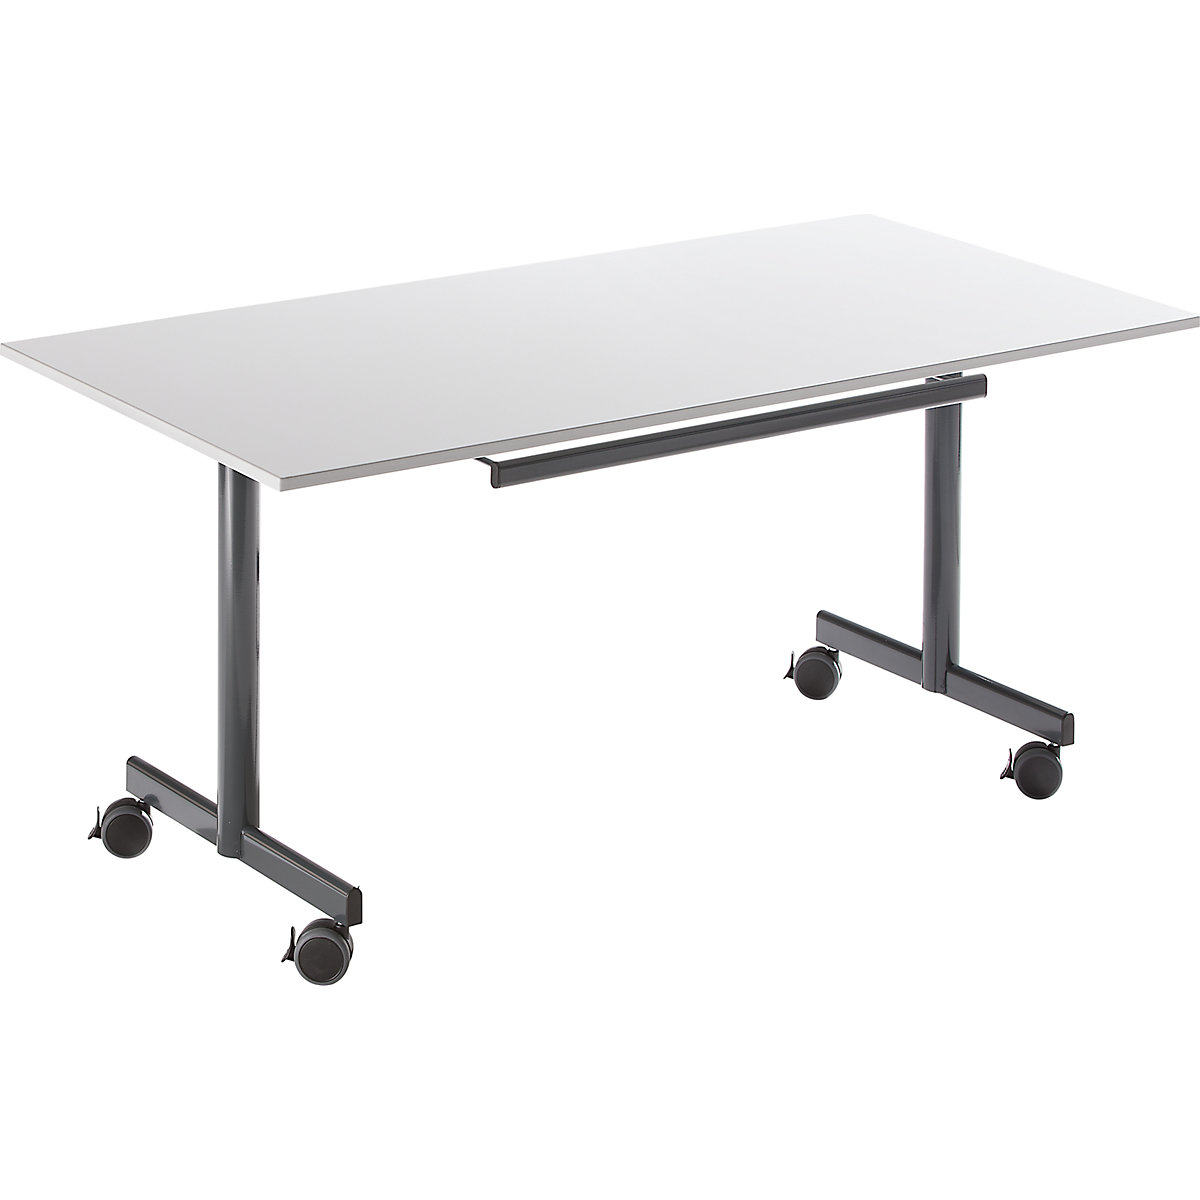 Mobil asztal lehajtható asztallappal, ma x szé x mé 720 x 1200 x 800 mm, szürke-3